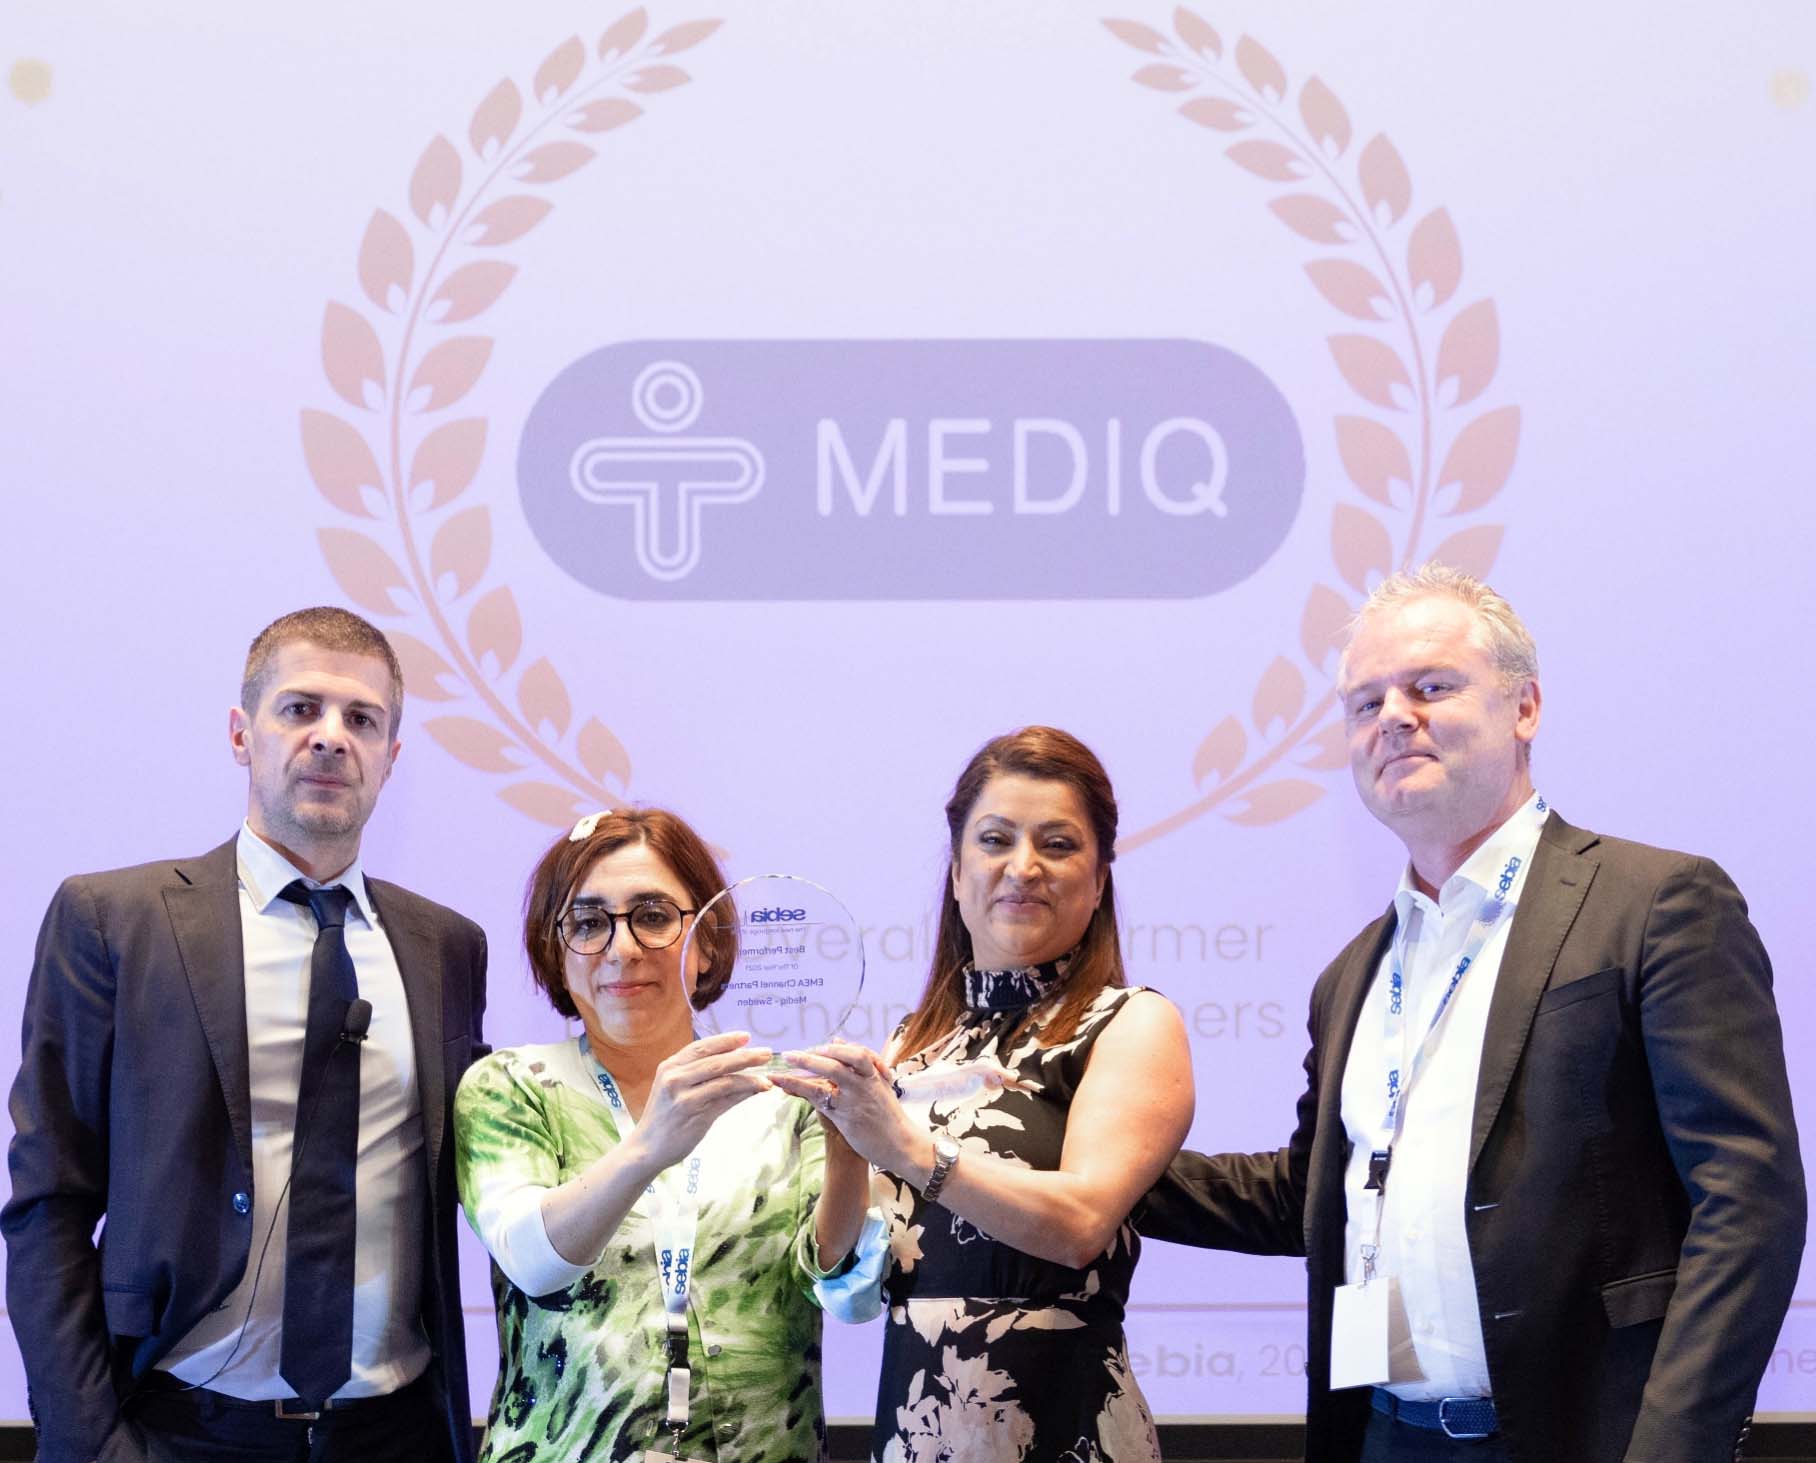 Mediq vinner pris som Sebias bästa partner